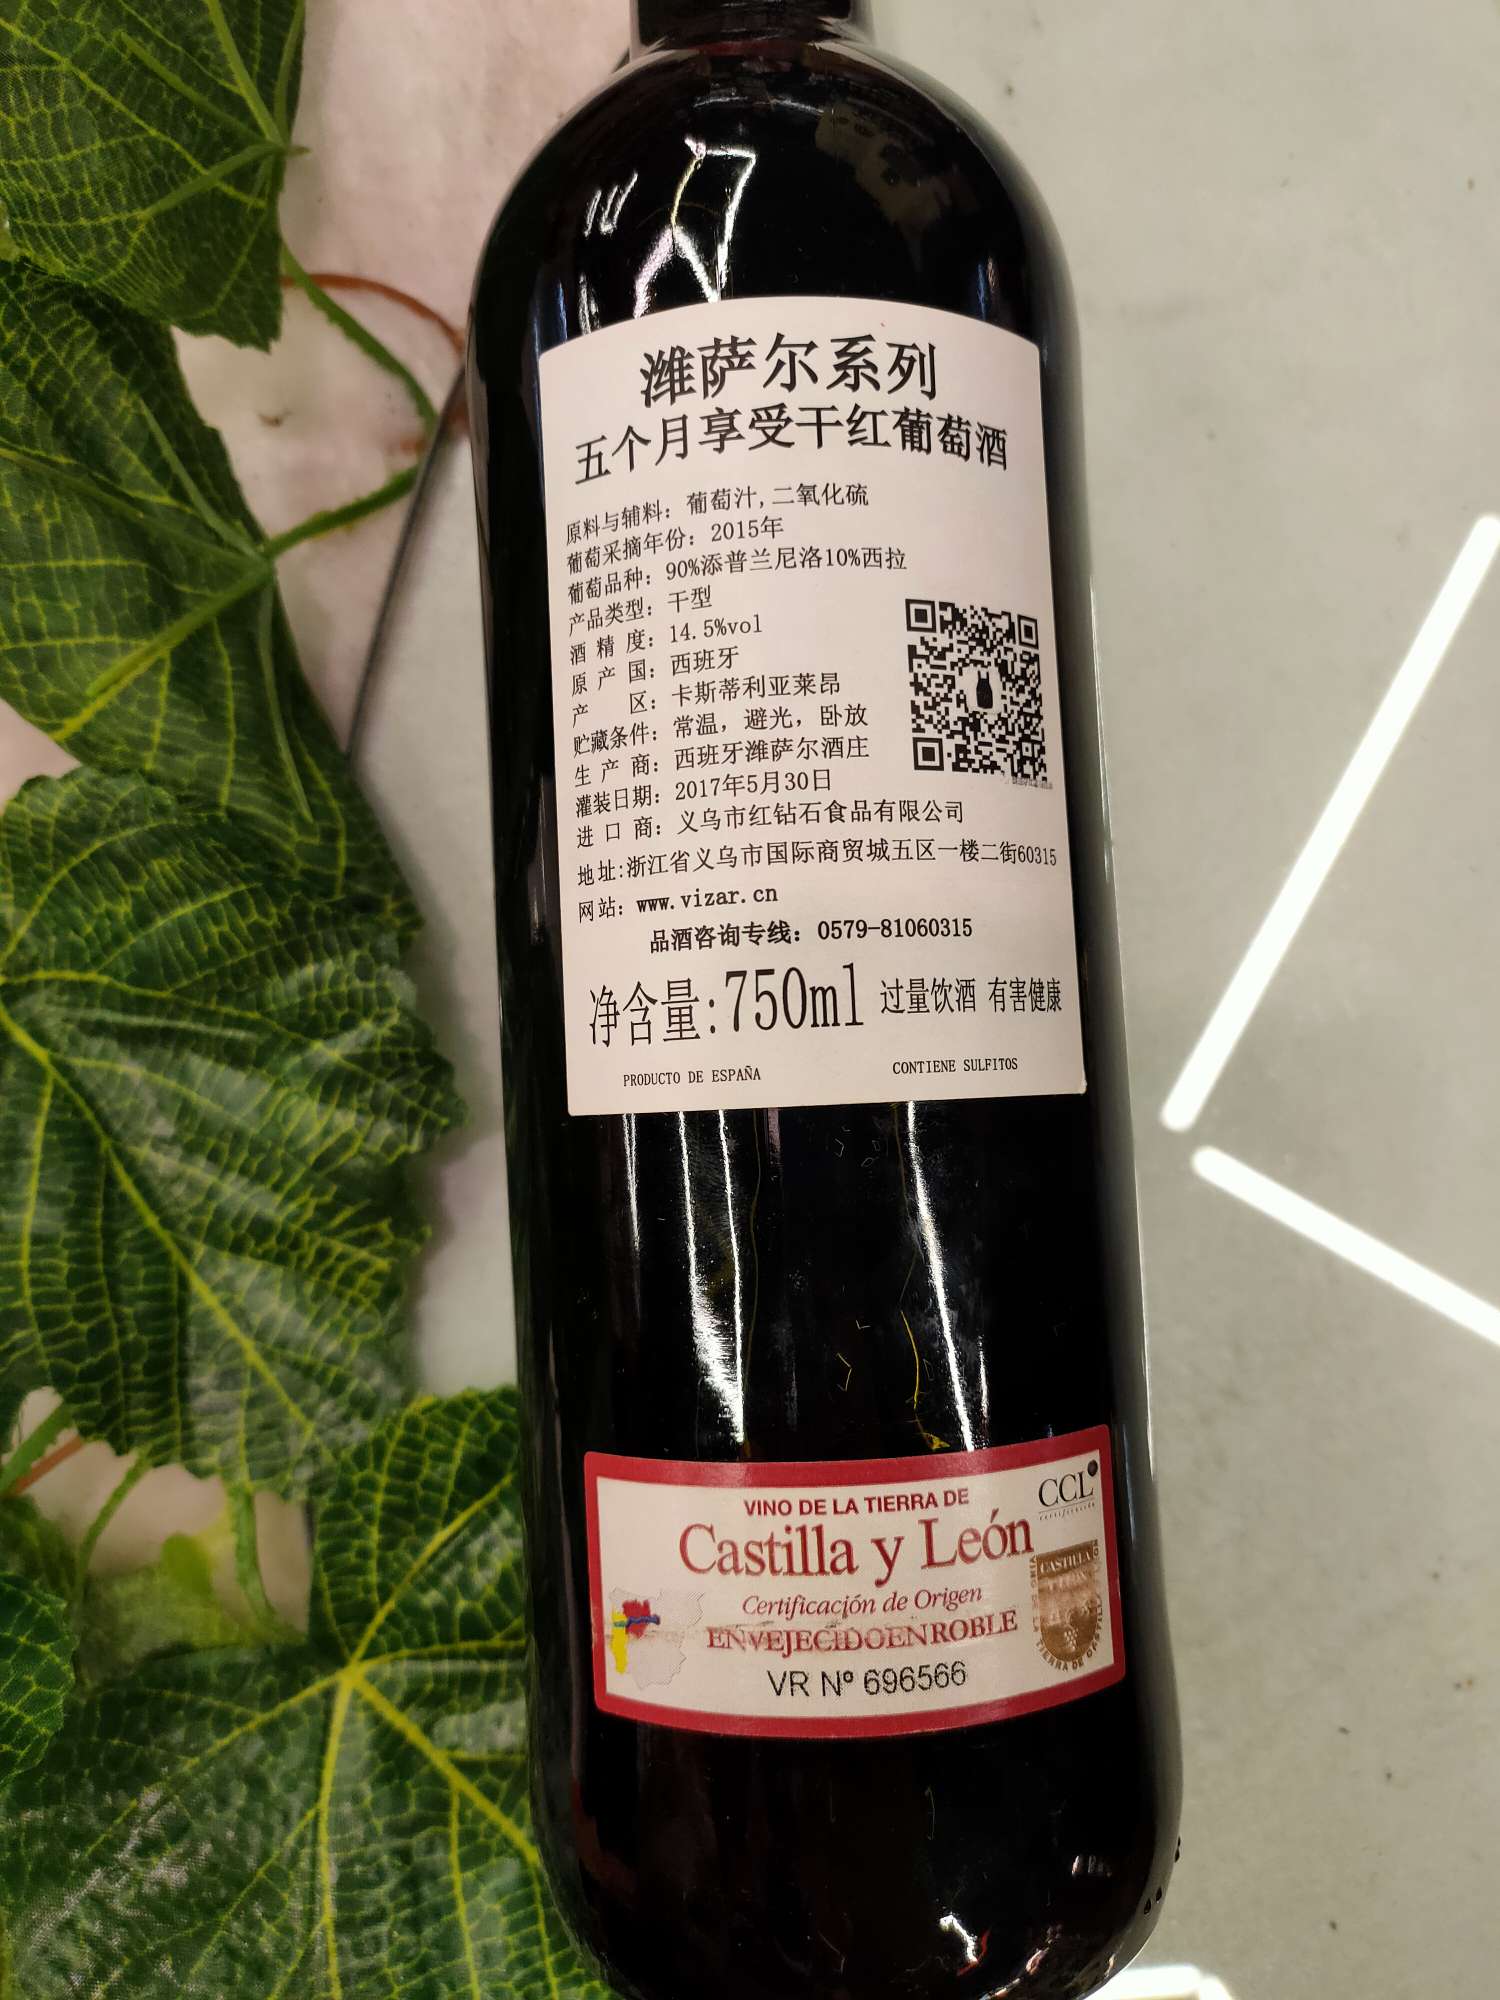 潍萨尔系列
五个月享受干红
2015年份酒细节图